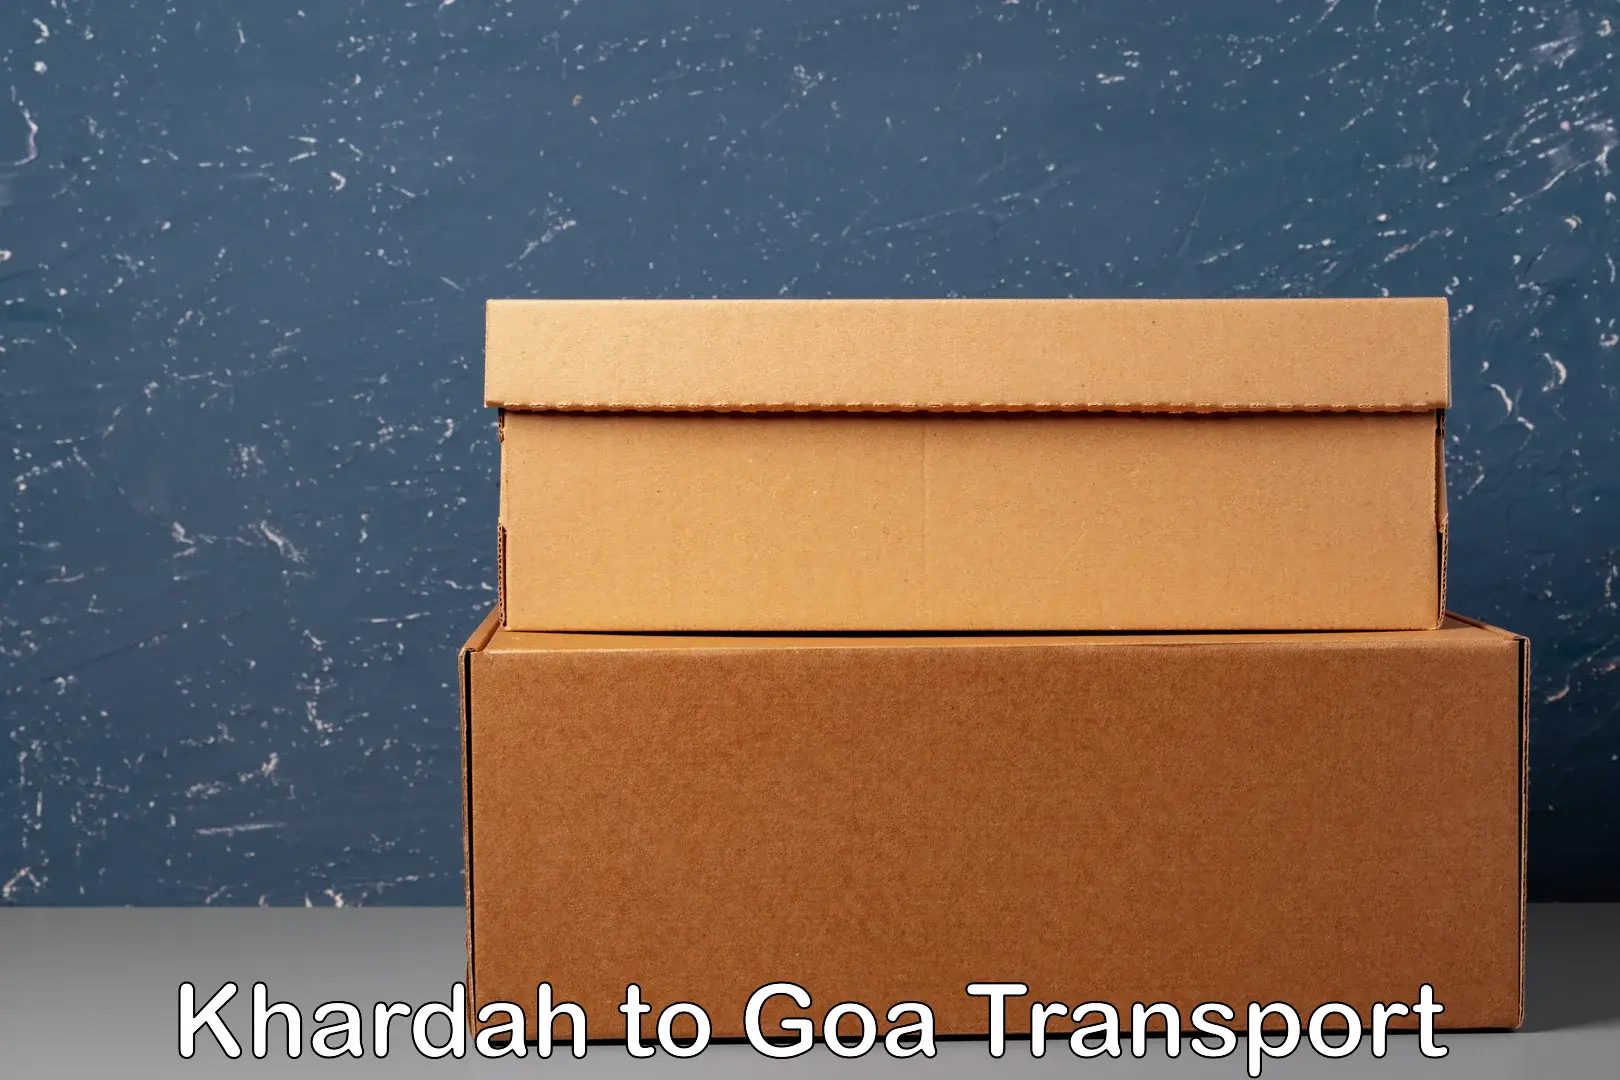 Commercial transport service Khardah to IIT Goa